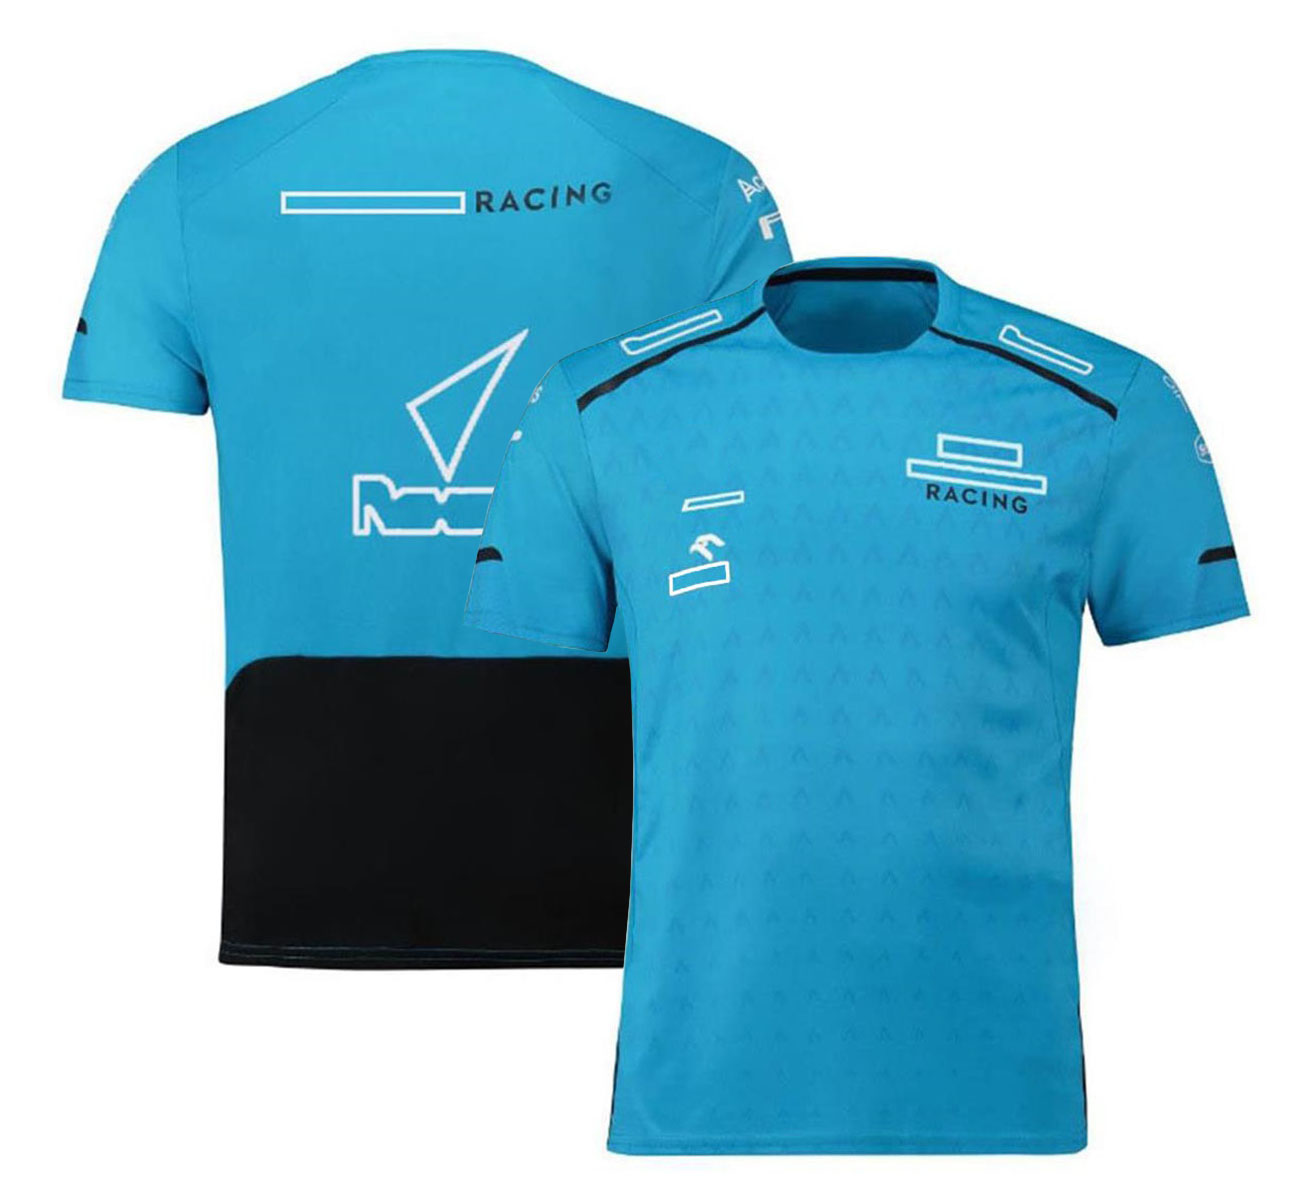 T-shirt de motorista de corrida f1 masculina, uniforme da equipe de fórmula 1, camisa de manga curta de pescoço de verão